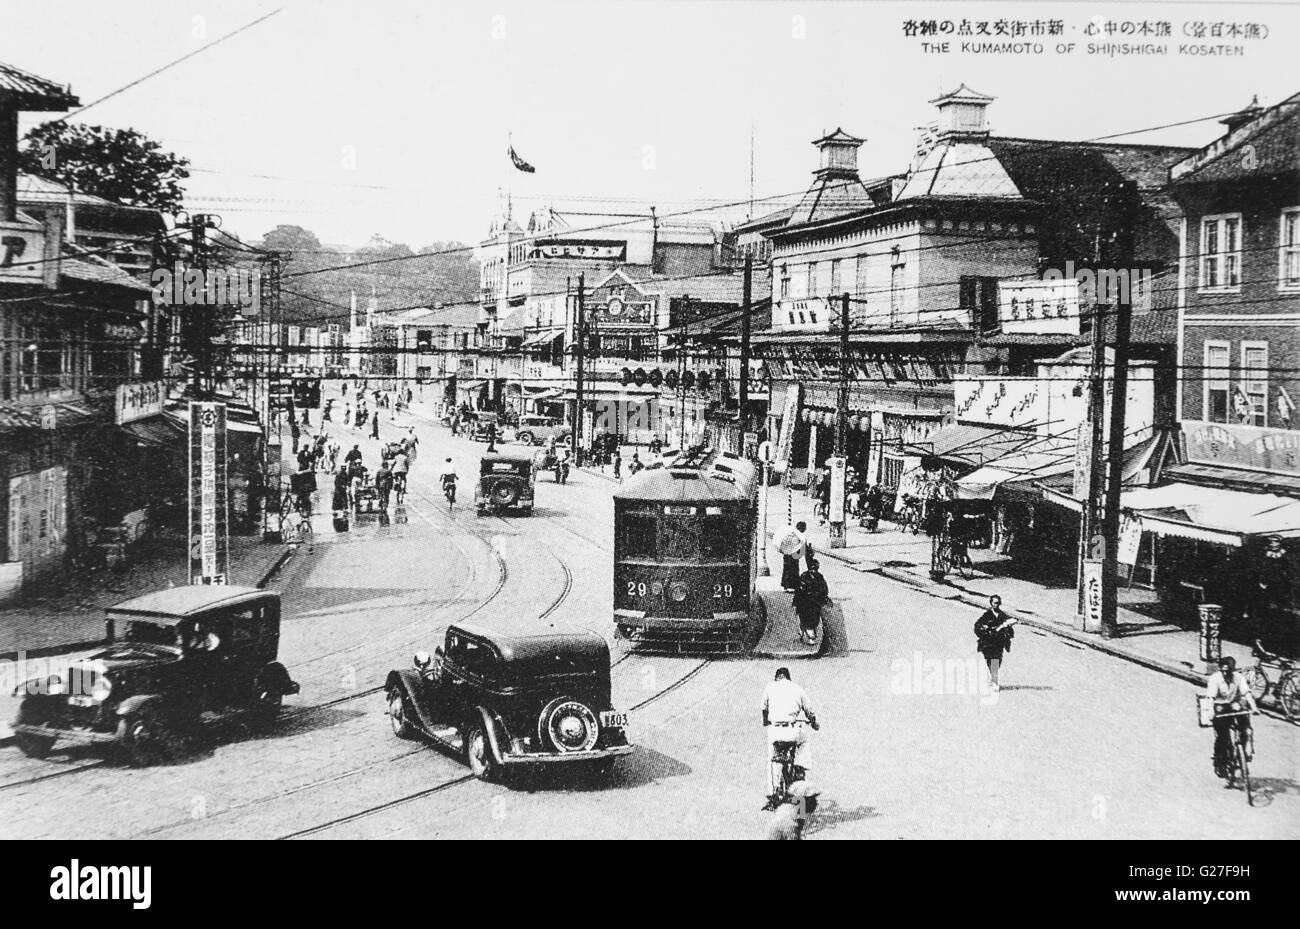 La ville de Kumamoto, Préfecture Kumamoto, Japon. c 1930. Château Kumamoto sur l'arrière. Banque D'Images